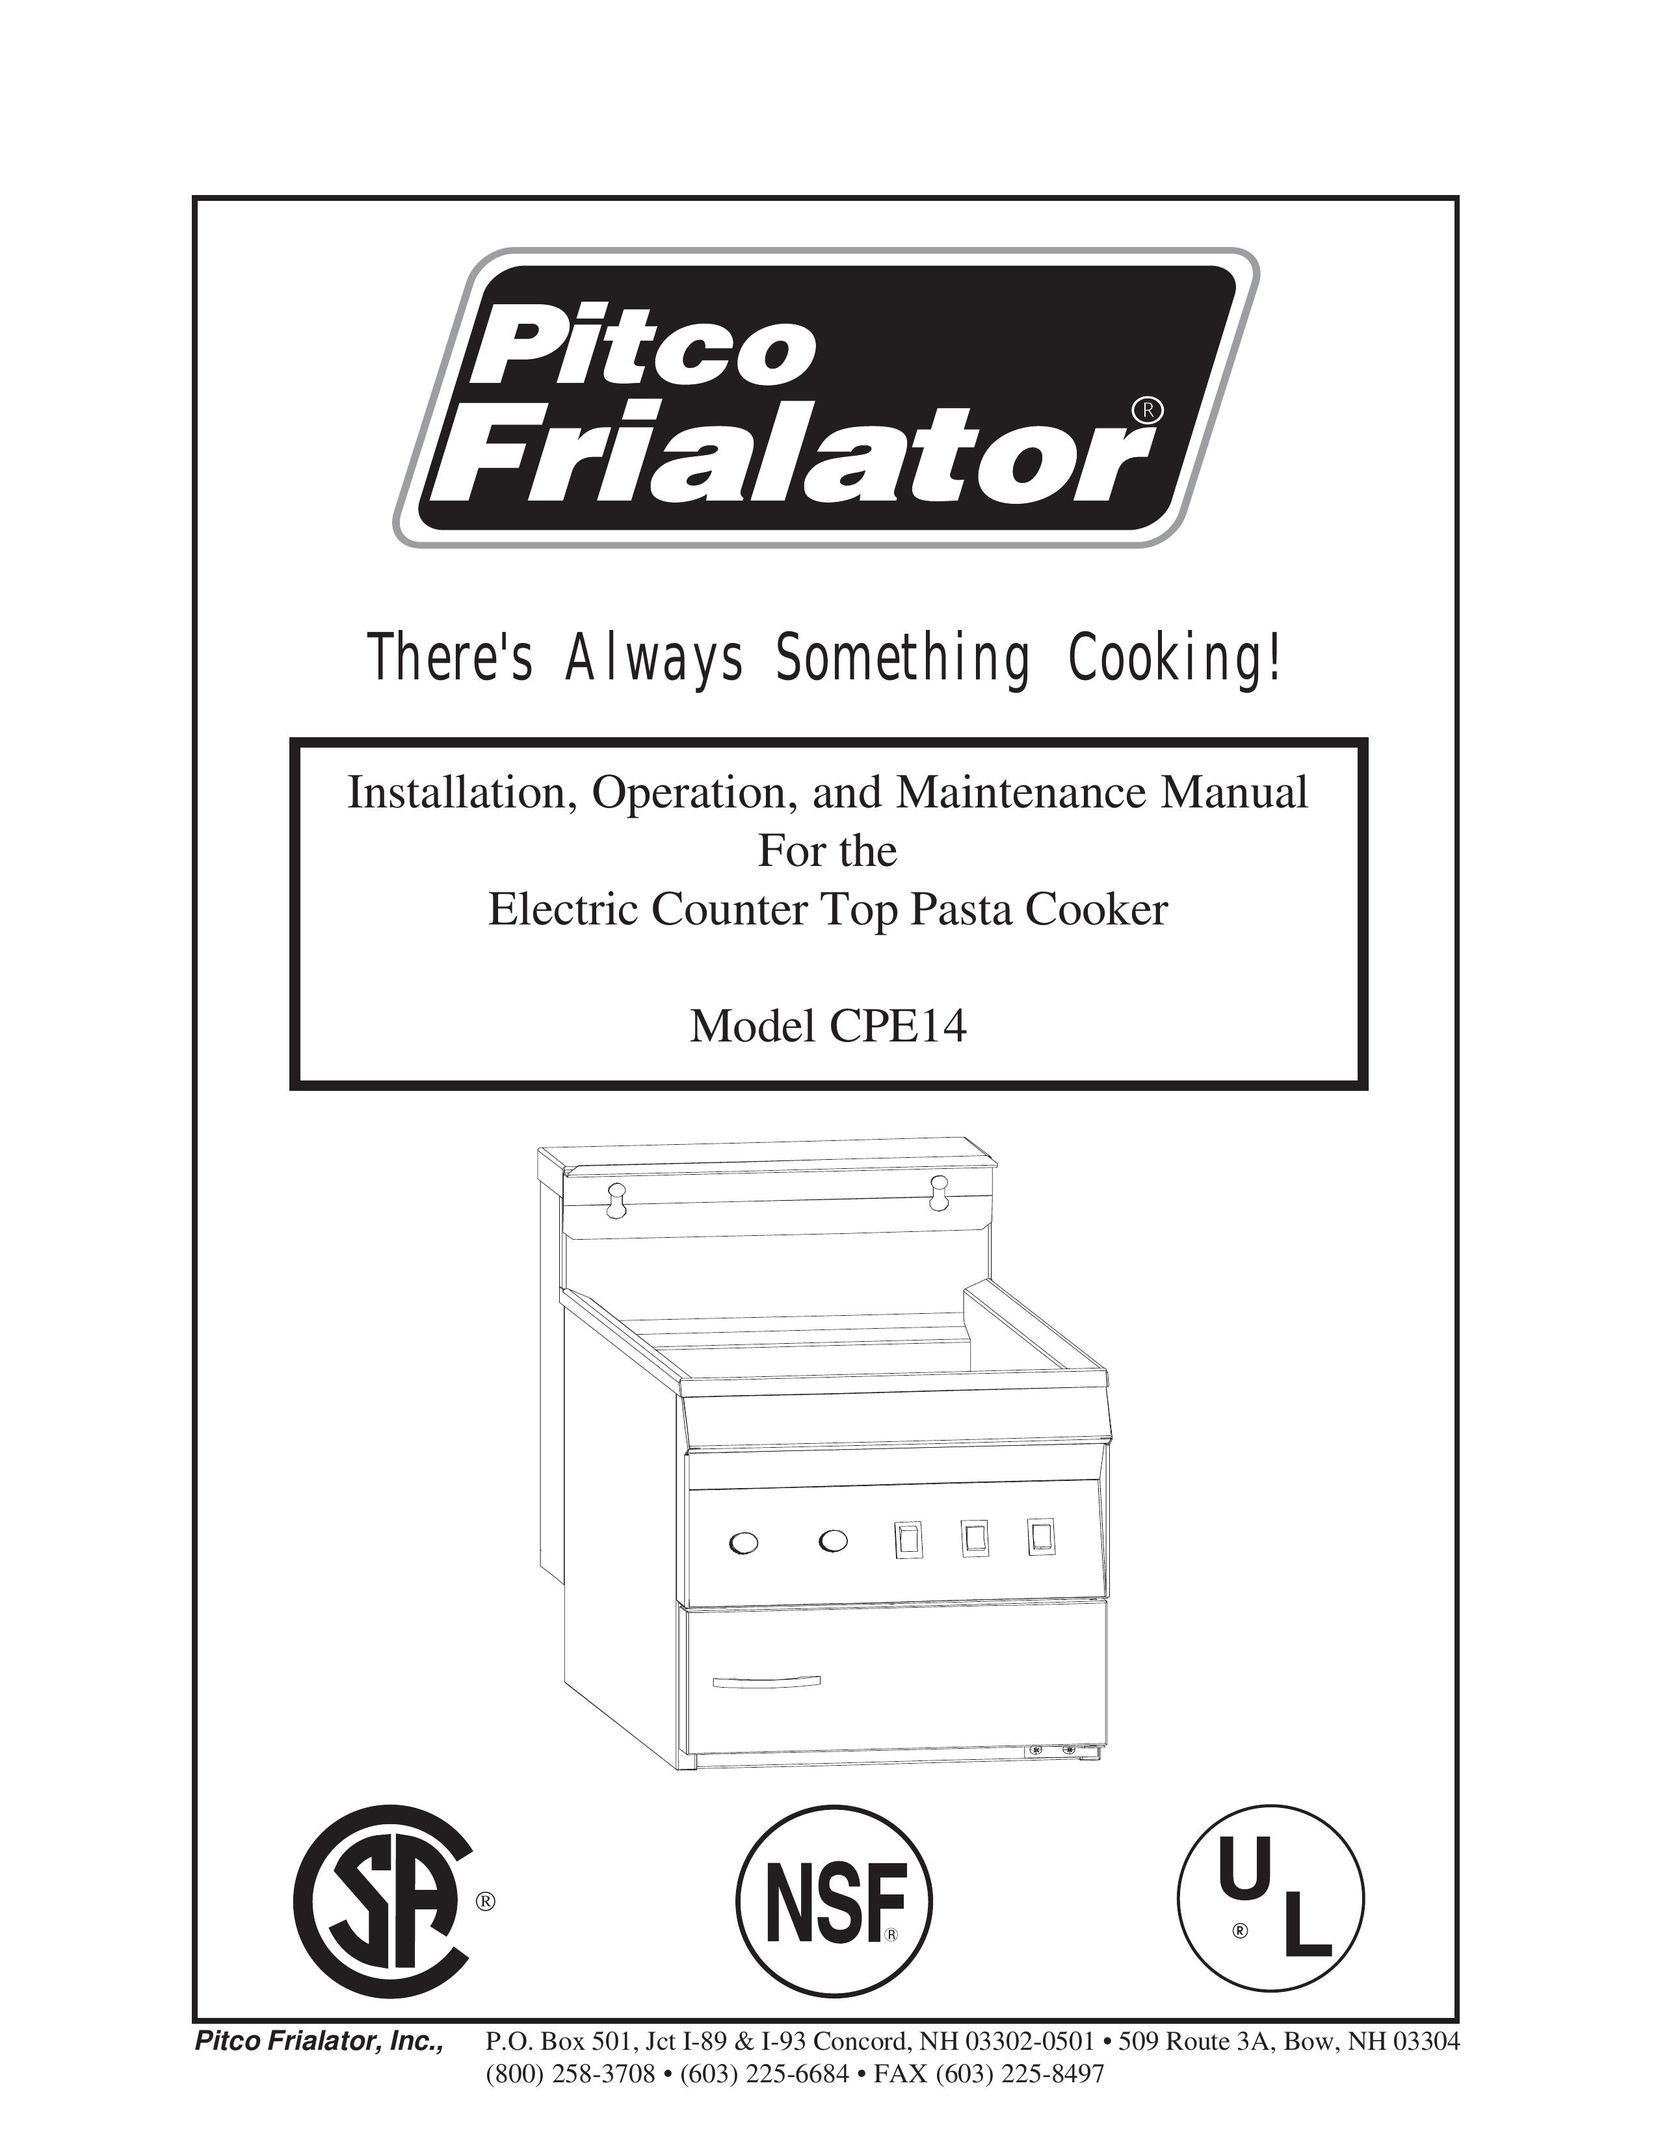 Pitco Frialator CPE14 Pasta Maker User Manual